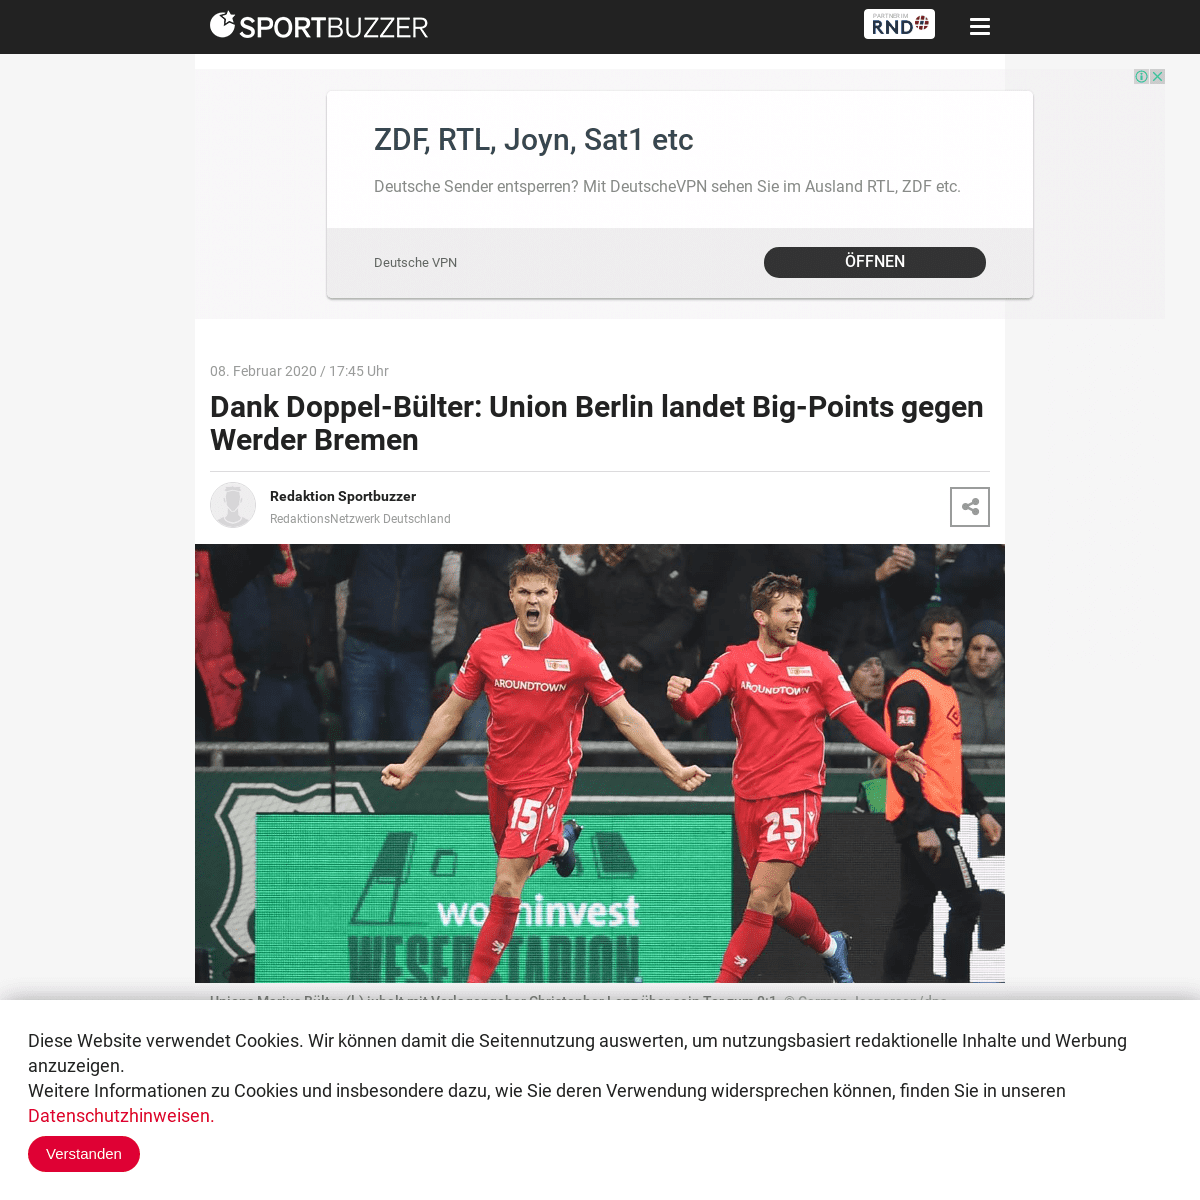 A complete backup of www.sportbuzzer.de/artikel/doppelpack-marius-bulter-union-berlin-landet-big-points-gegen-werder-bremen/